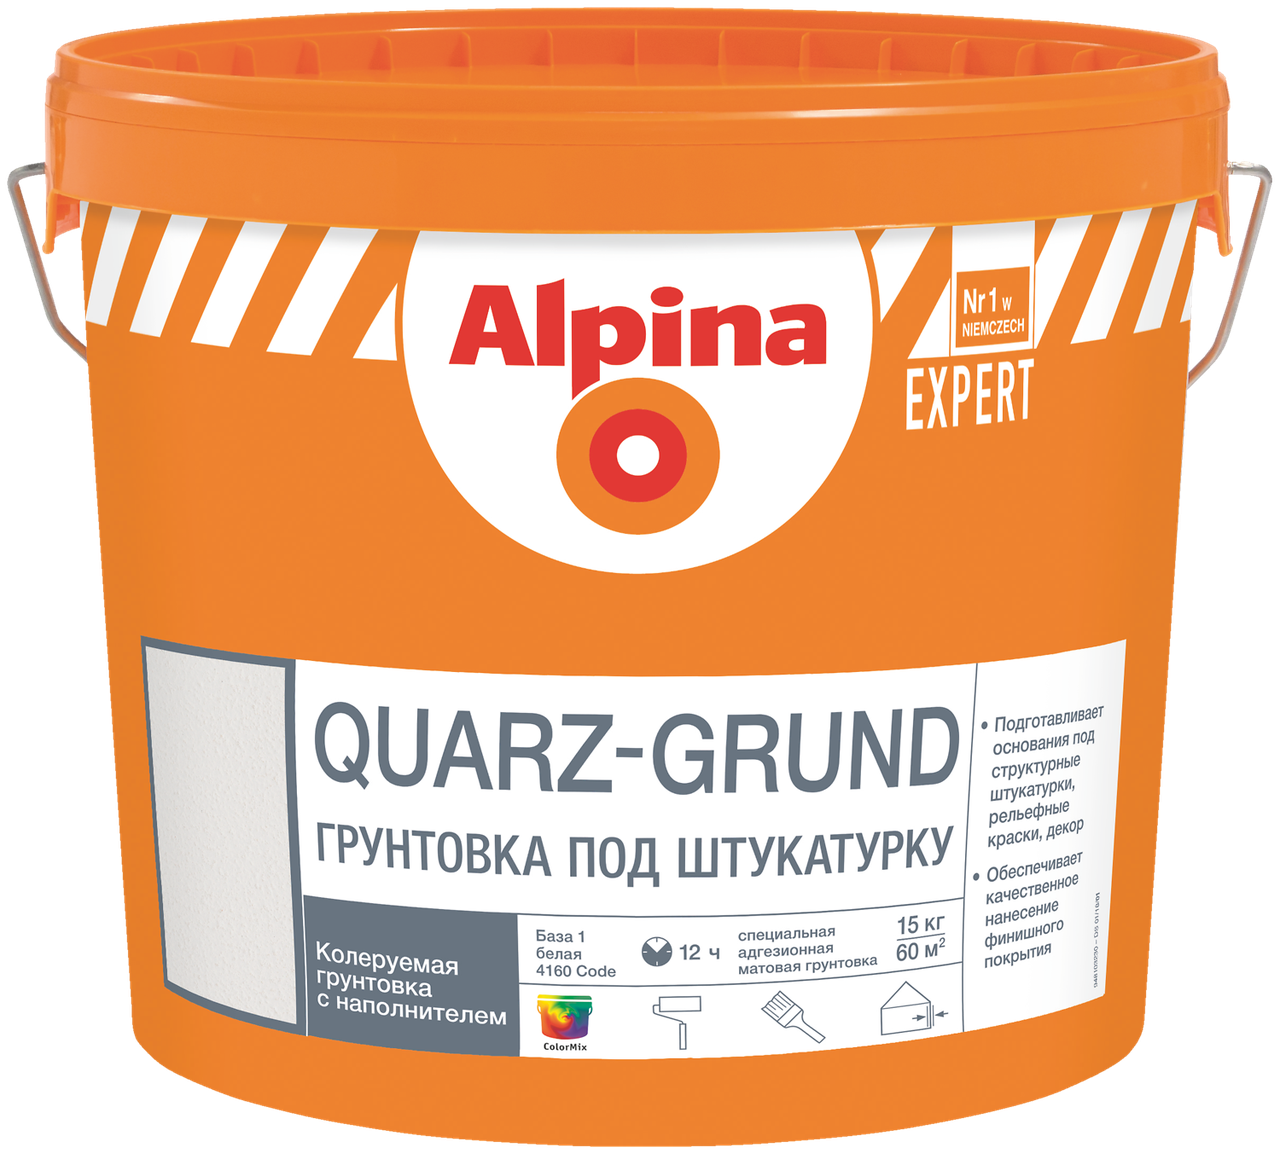 Грунтовка Alpina EXPERT Quarz-Grund База1 15кг